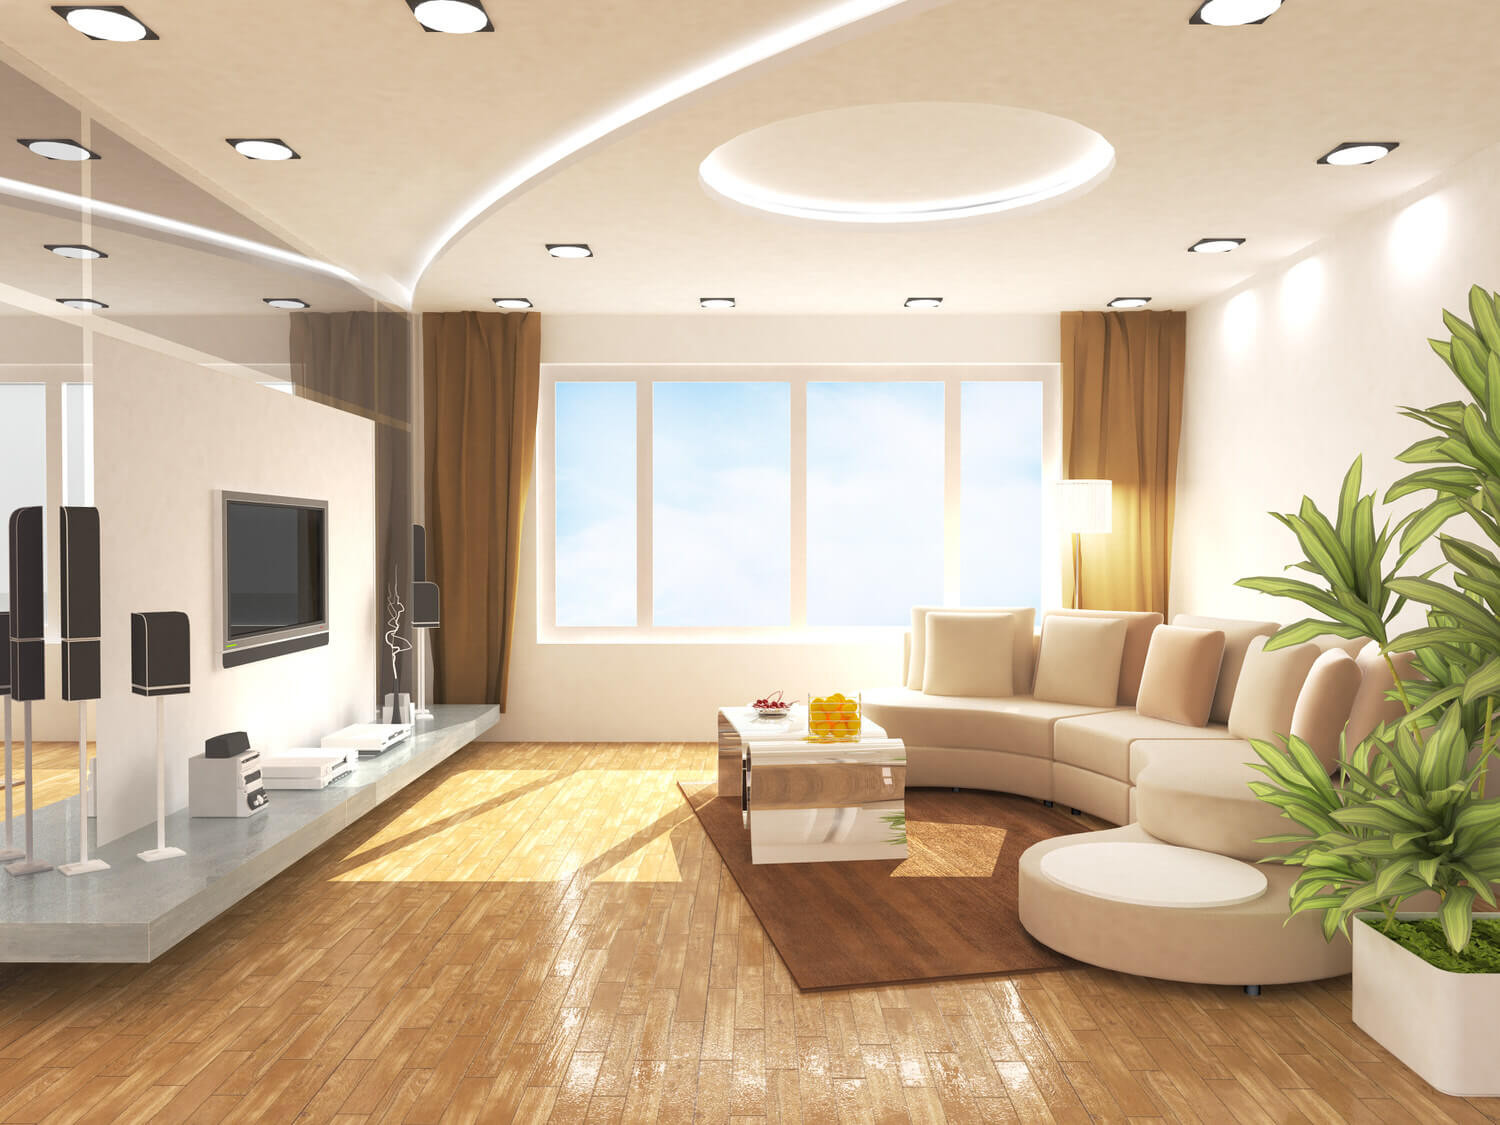 Trave Wohnung
 Gute Stimmung in der Wohnung – Tipps für optimale Beleuchtung